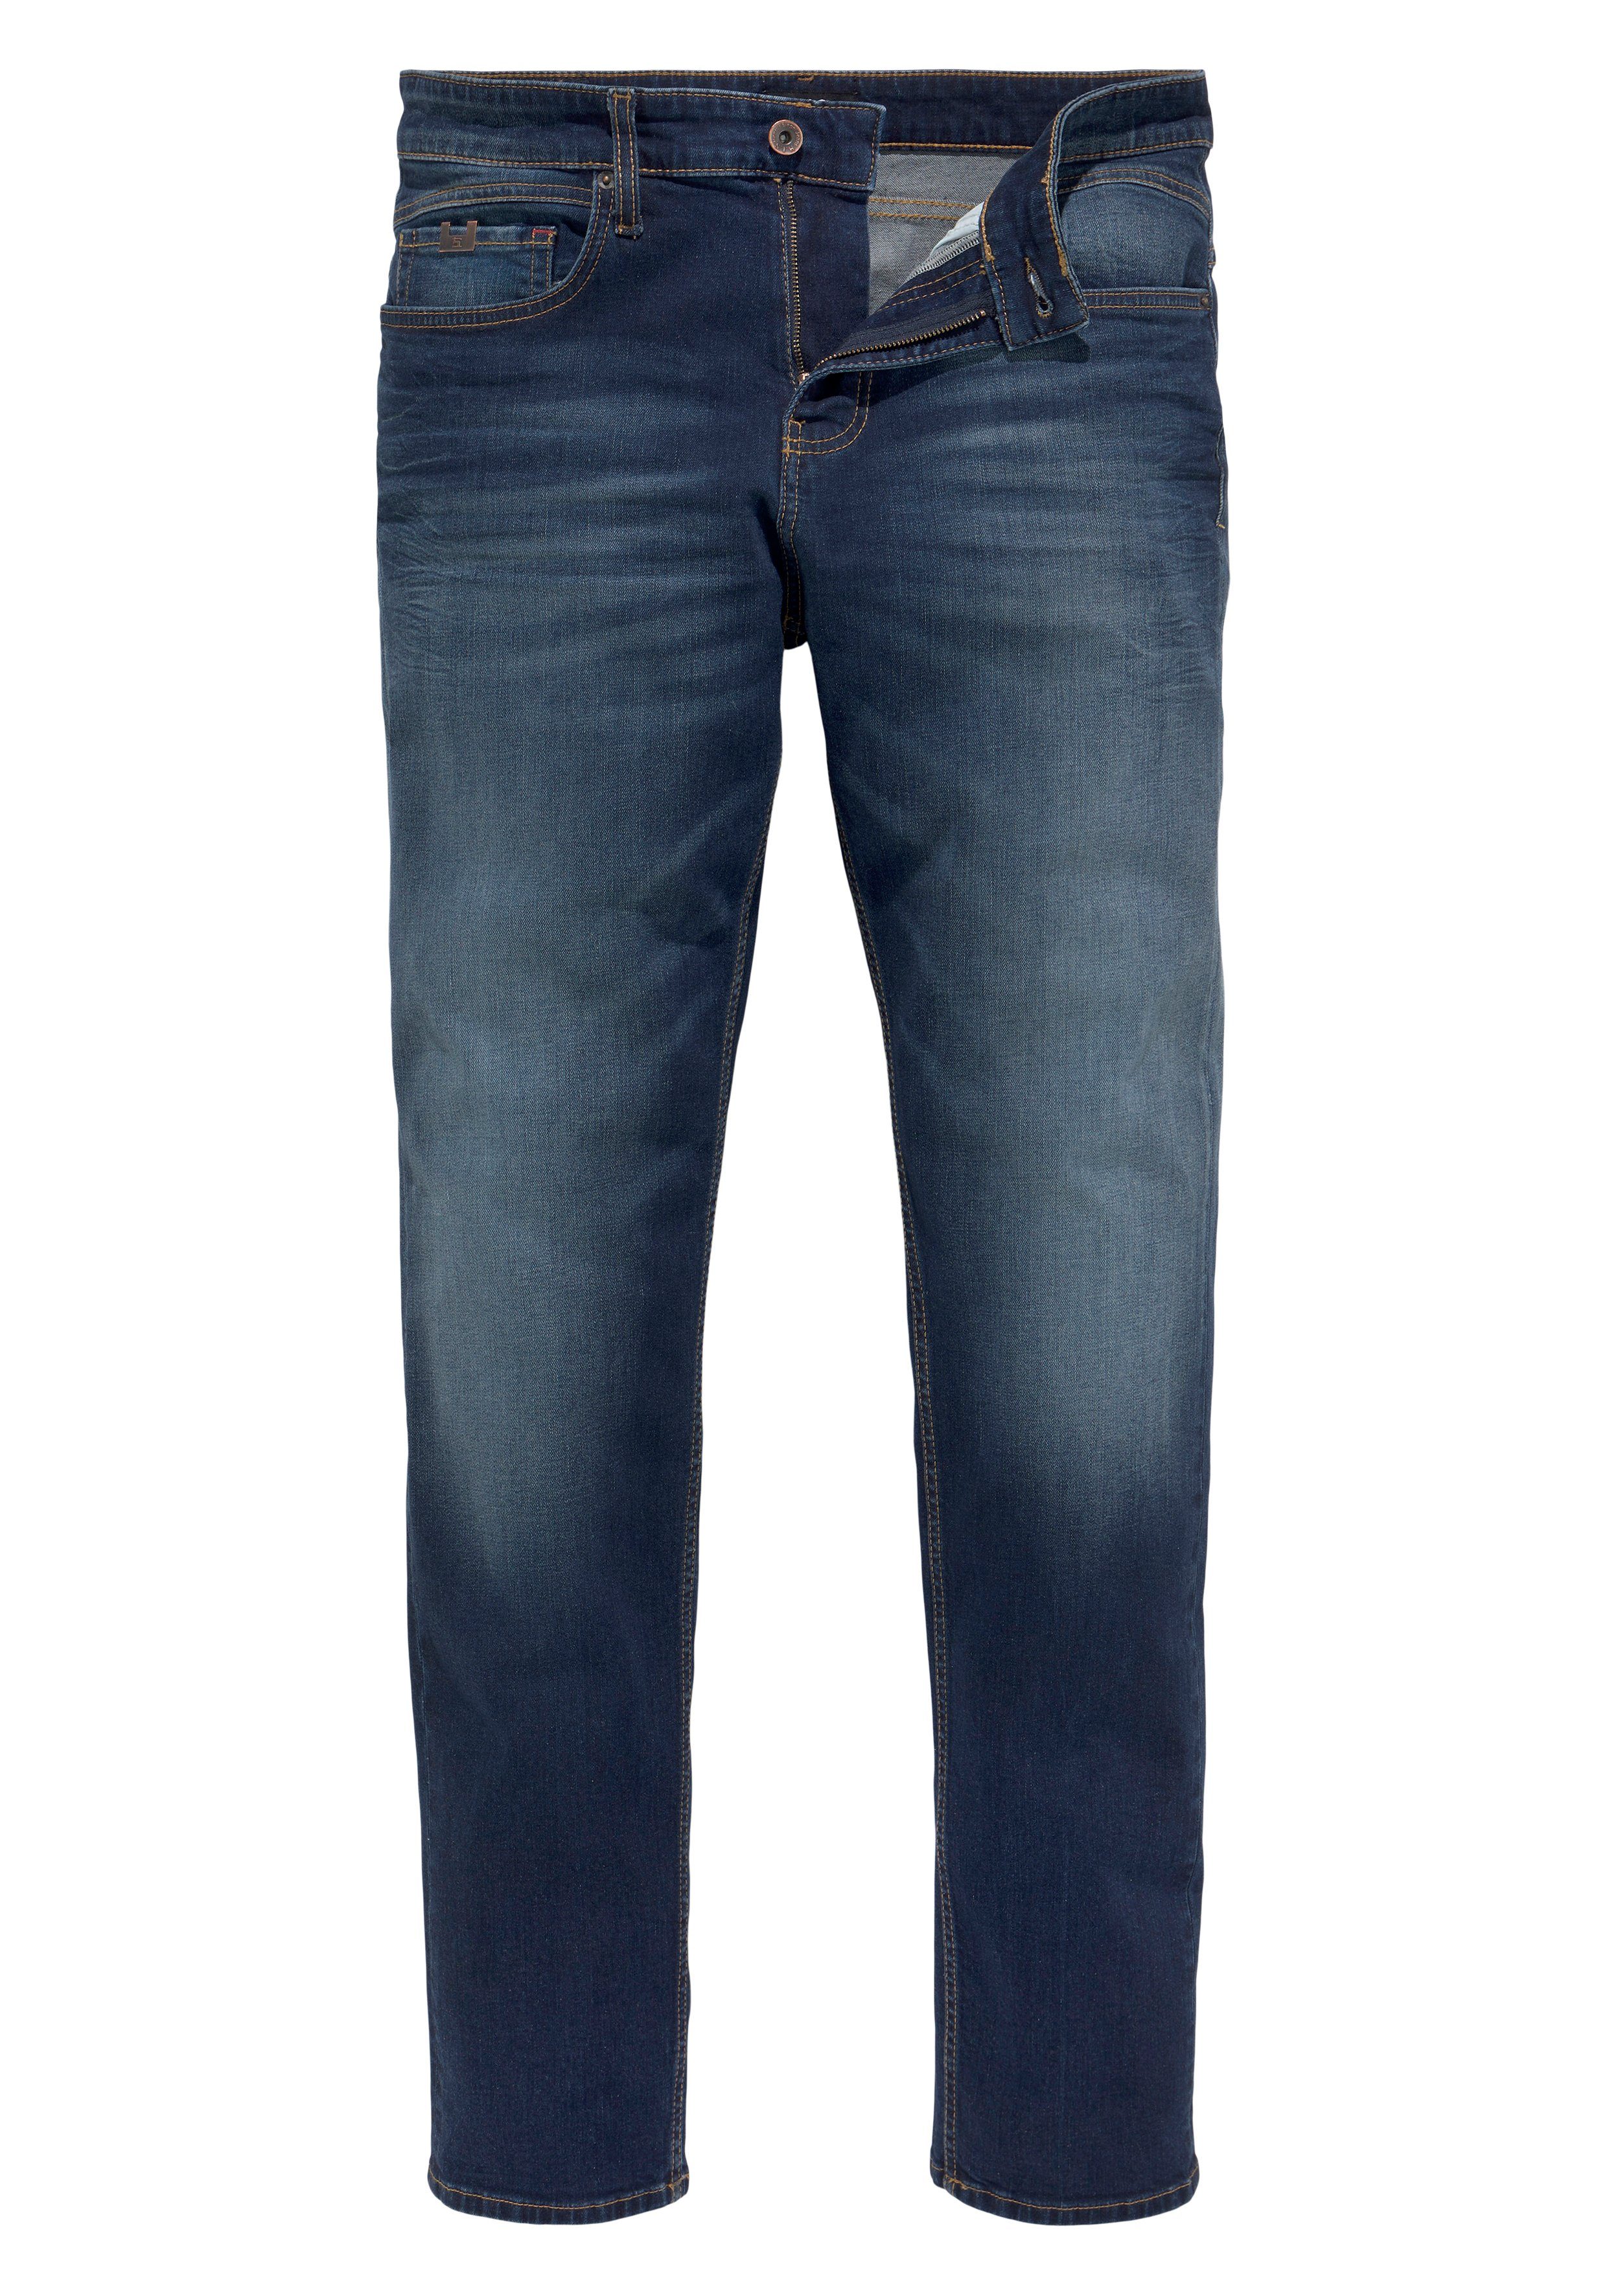 Ozon Tapered-fit-Jeans dark CIAN durch wassersparende Ökologische, H.I.S blue Wash Produktion